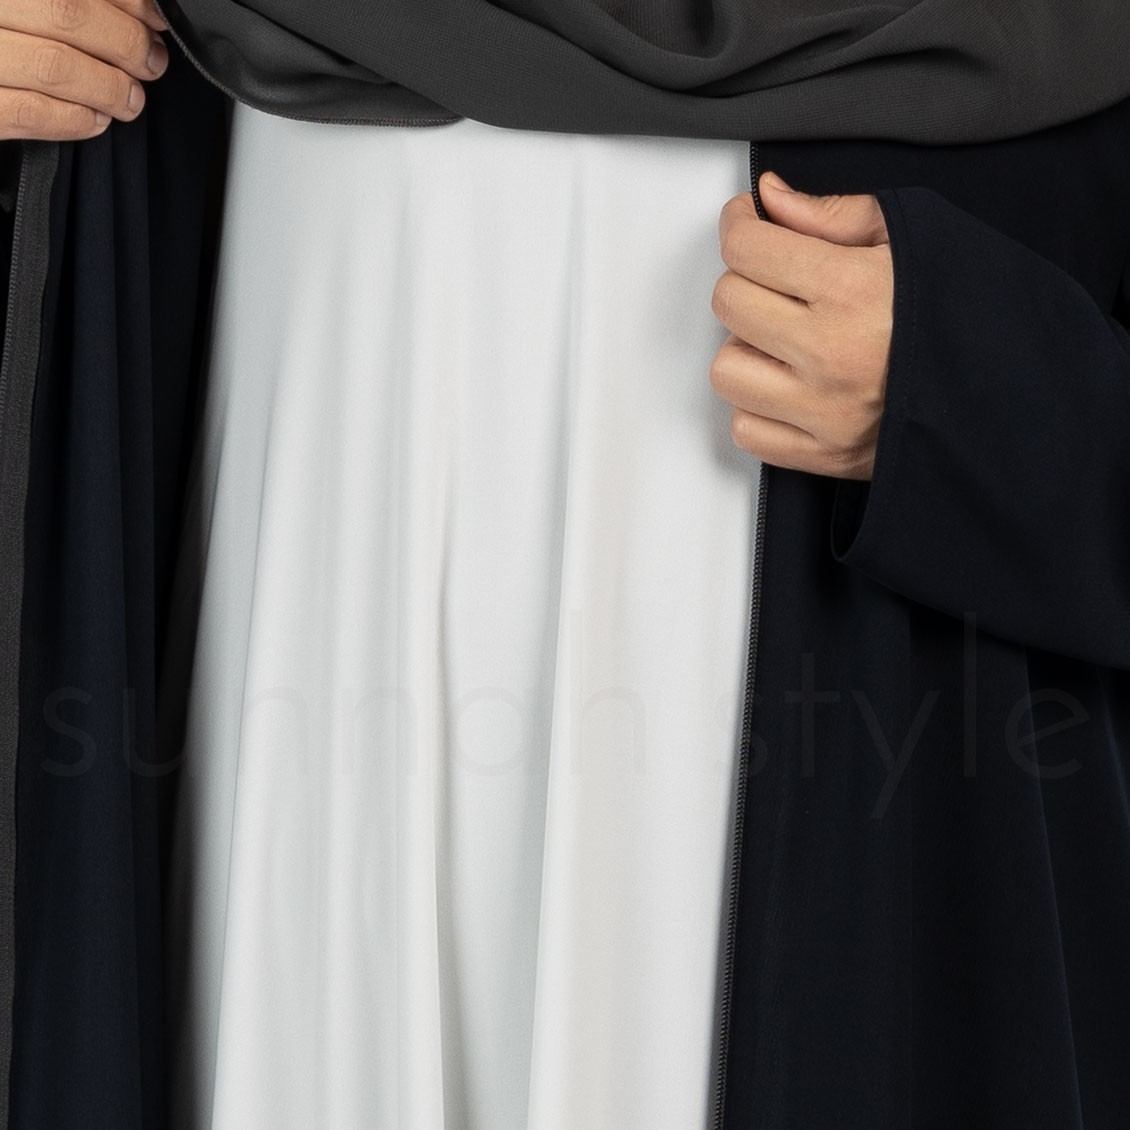 Sunnah Style Sleeveless Jersey Abaya Glacier Grey